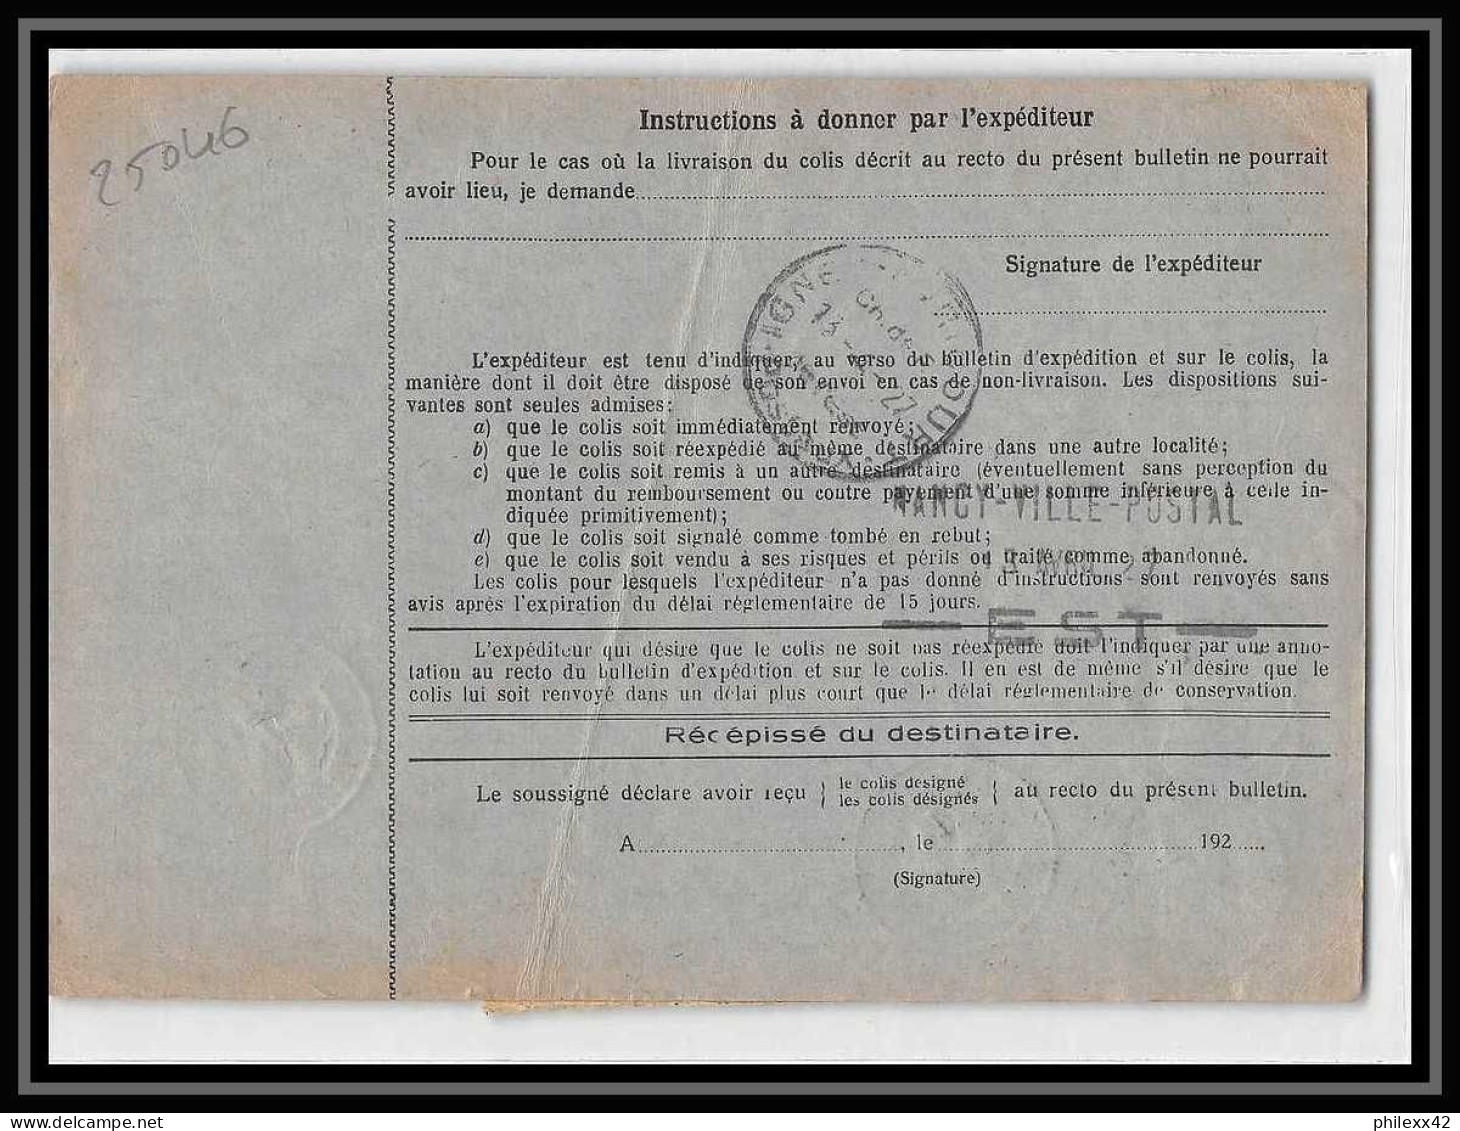 25046 Bulletin D'expédition France Colis Postaux Fiscal Haut Rhin 1927 Strasbourg Semeuse + Merson 145 Alsace-Lorraine  - Storia Postale